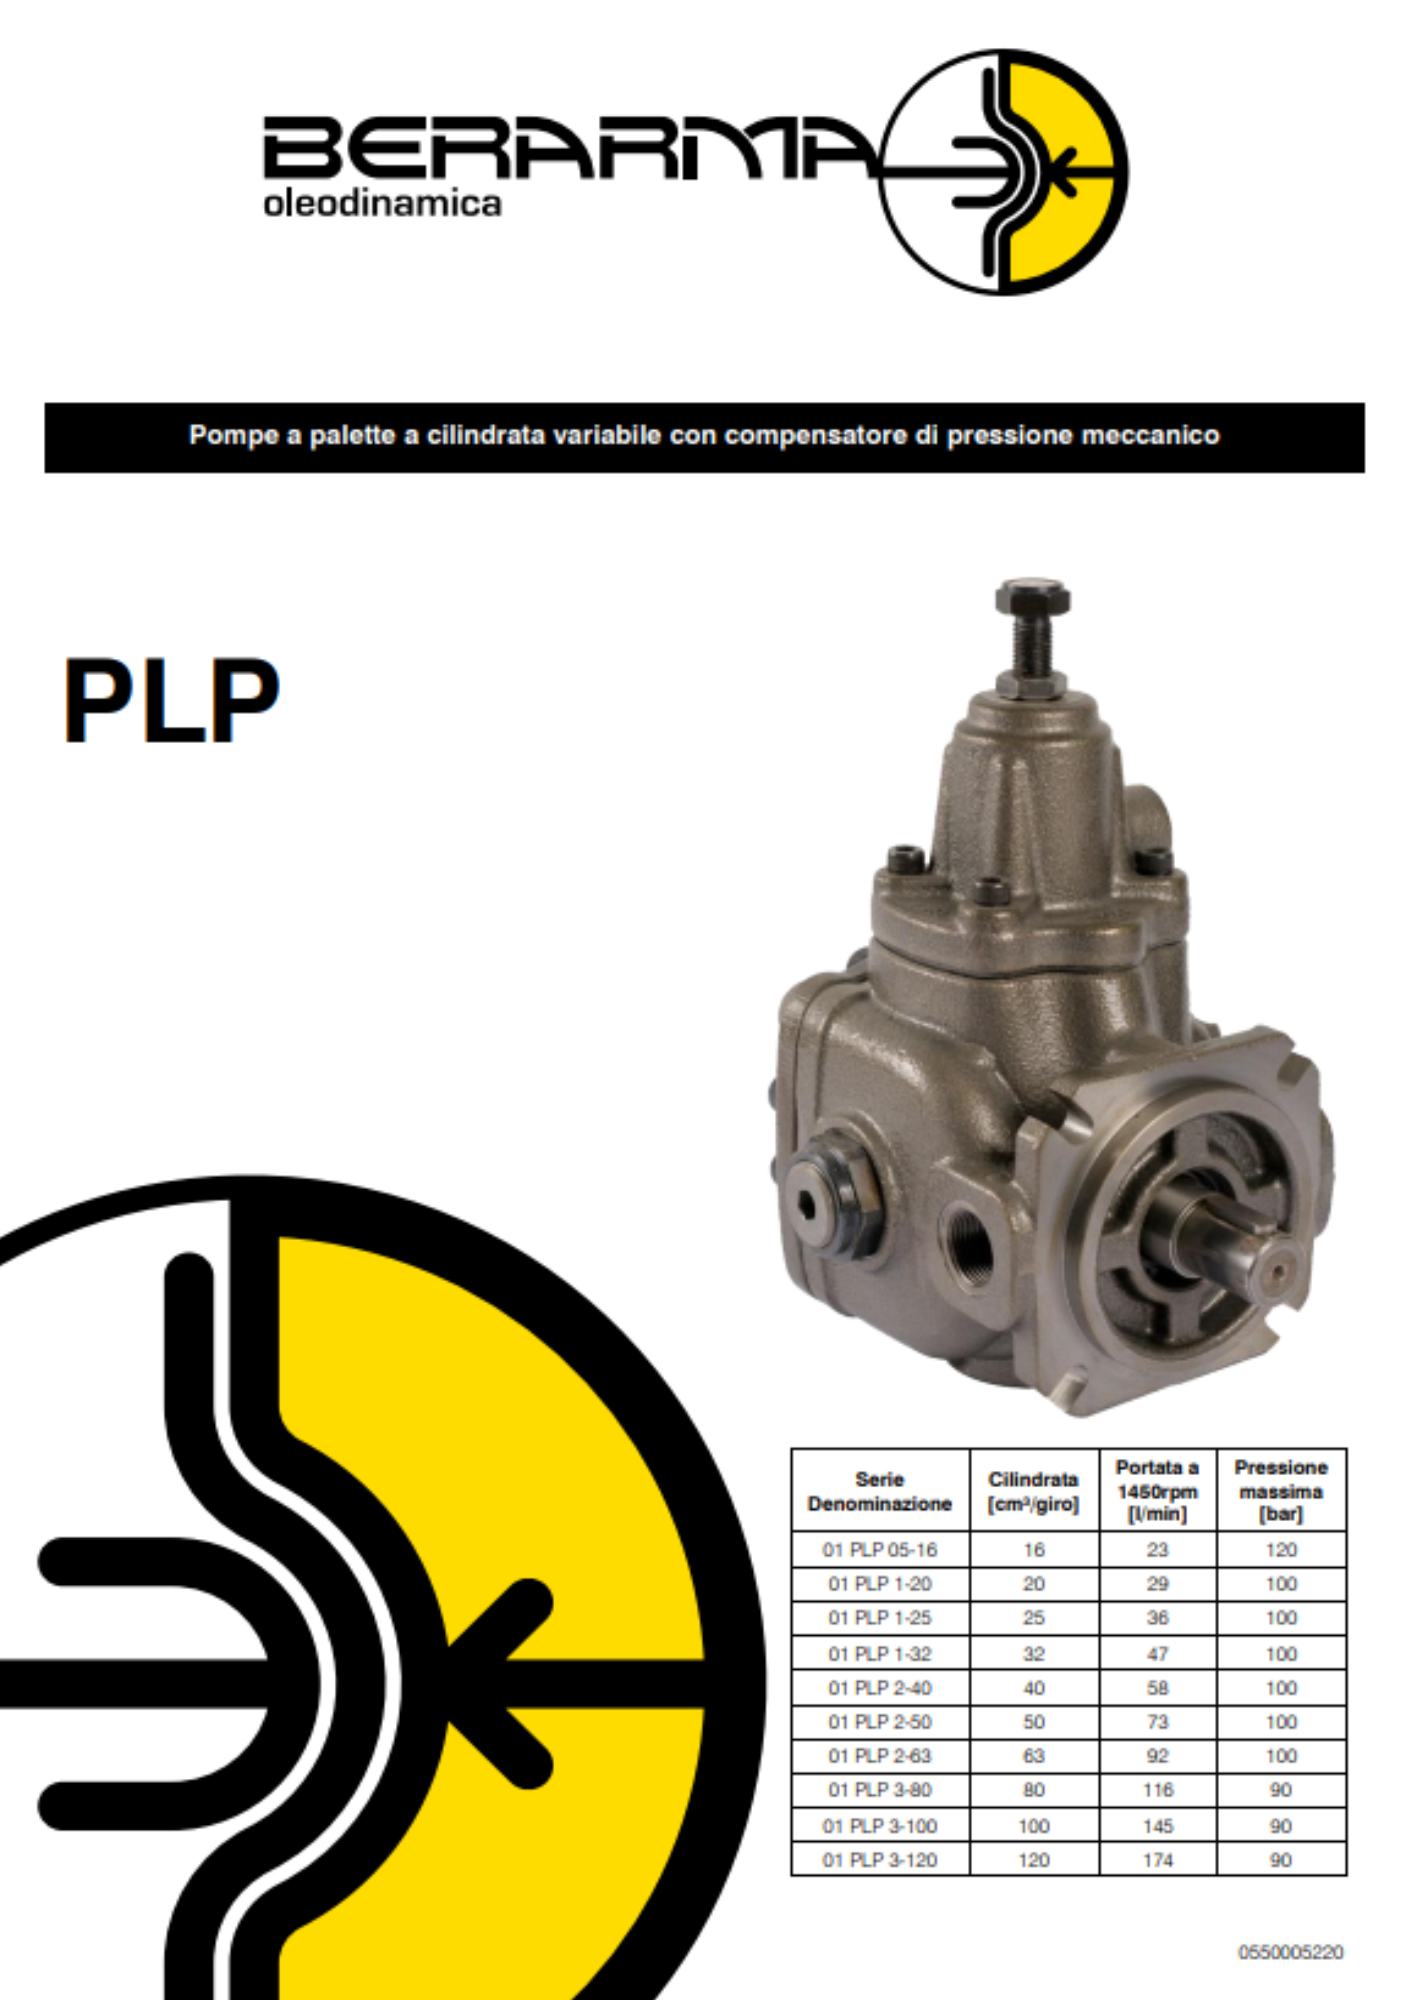 Berarma: pompe a palette cilindrata variabile PLP